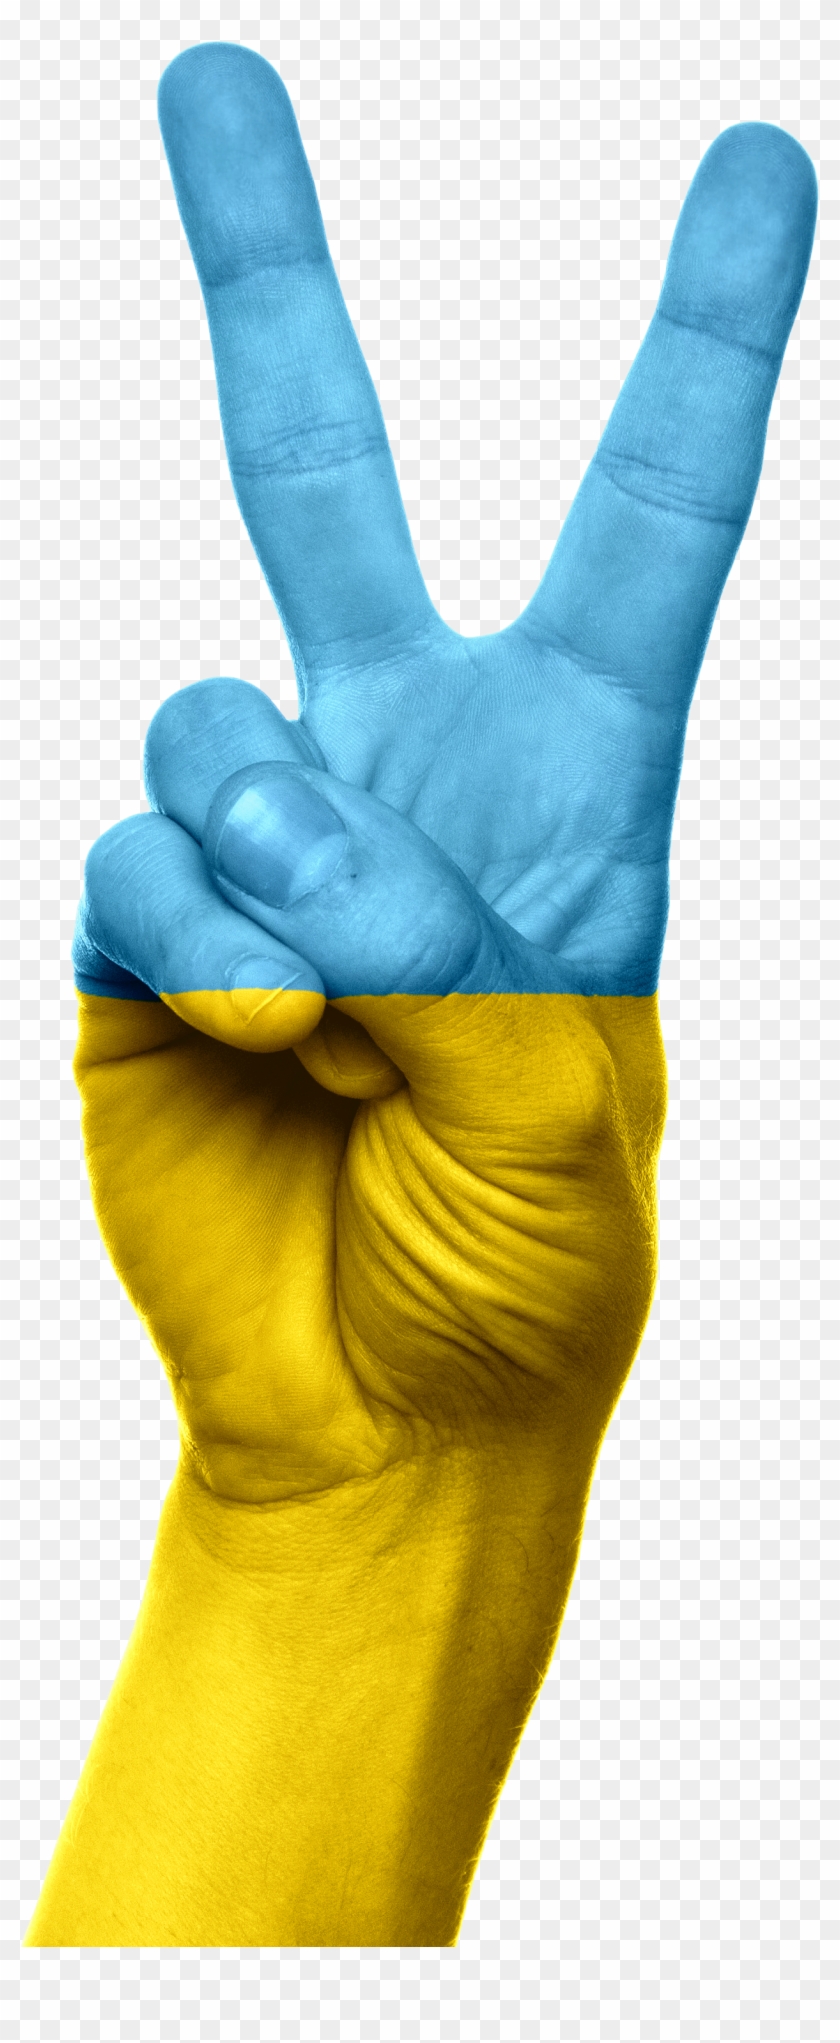 Ukraine Flag Hand Peace Victory 643633 - Ukraine Flag On Hand Clipart #1313555